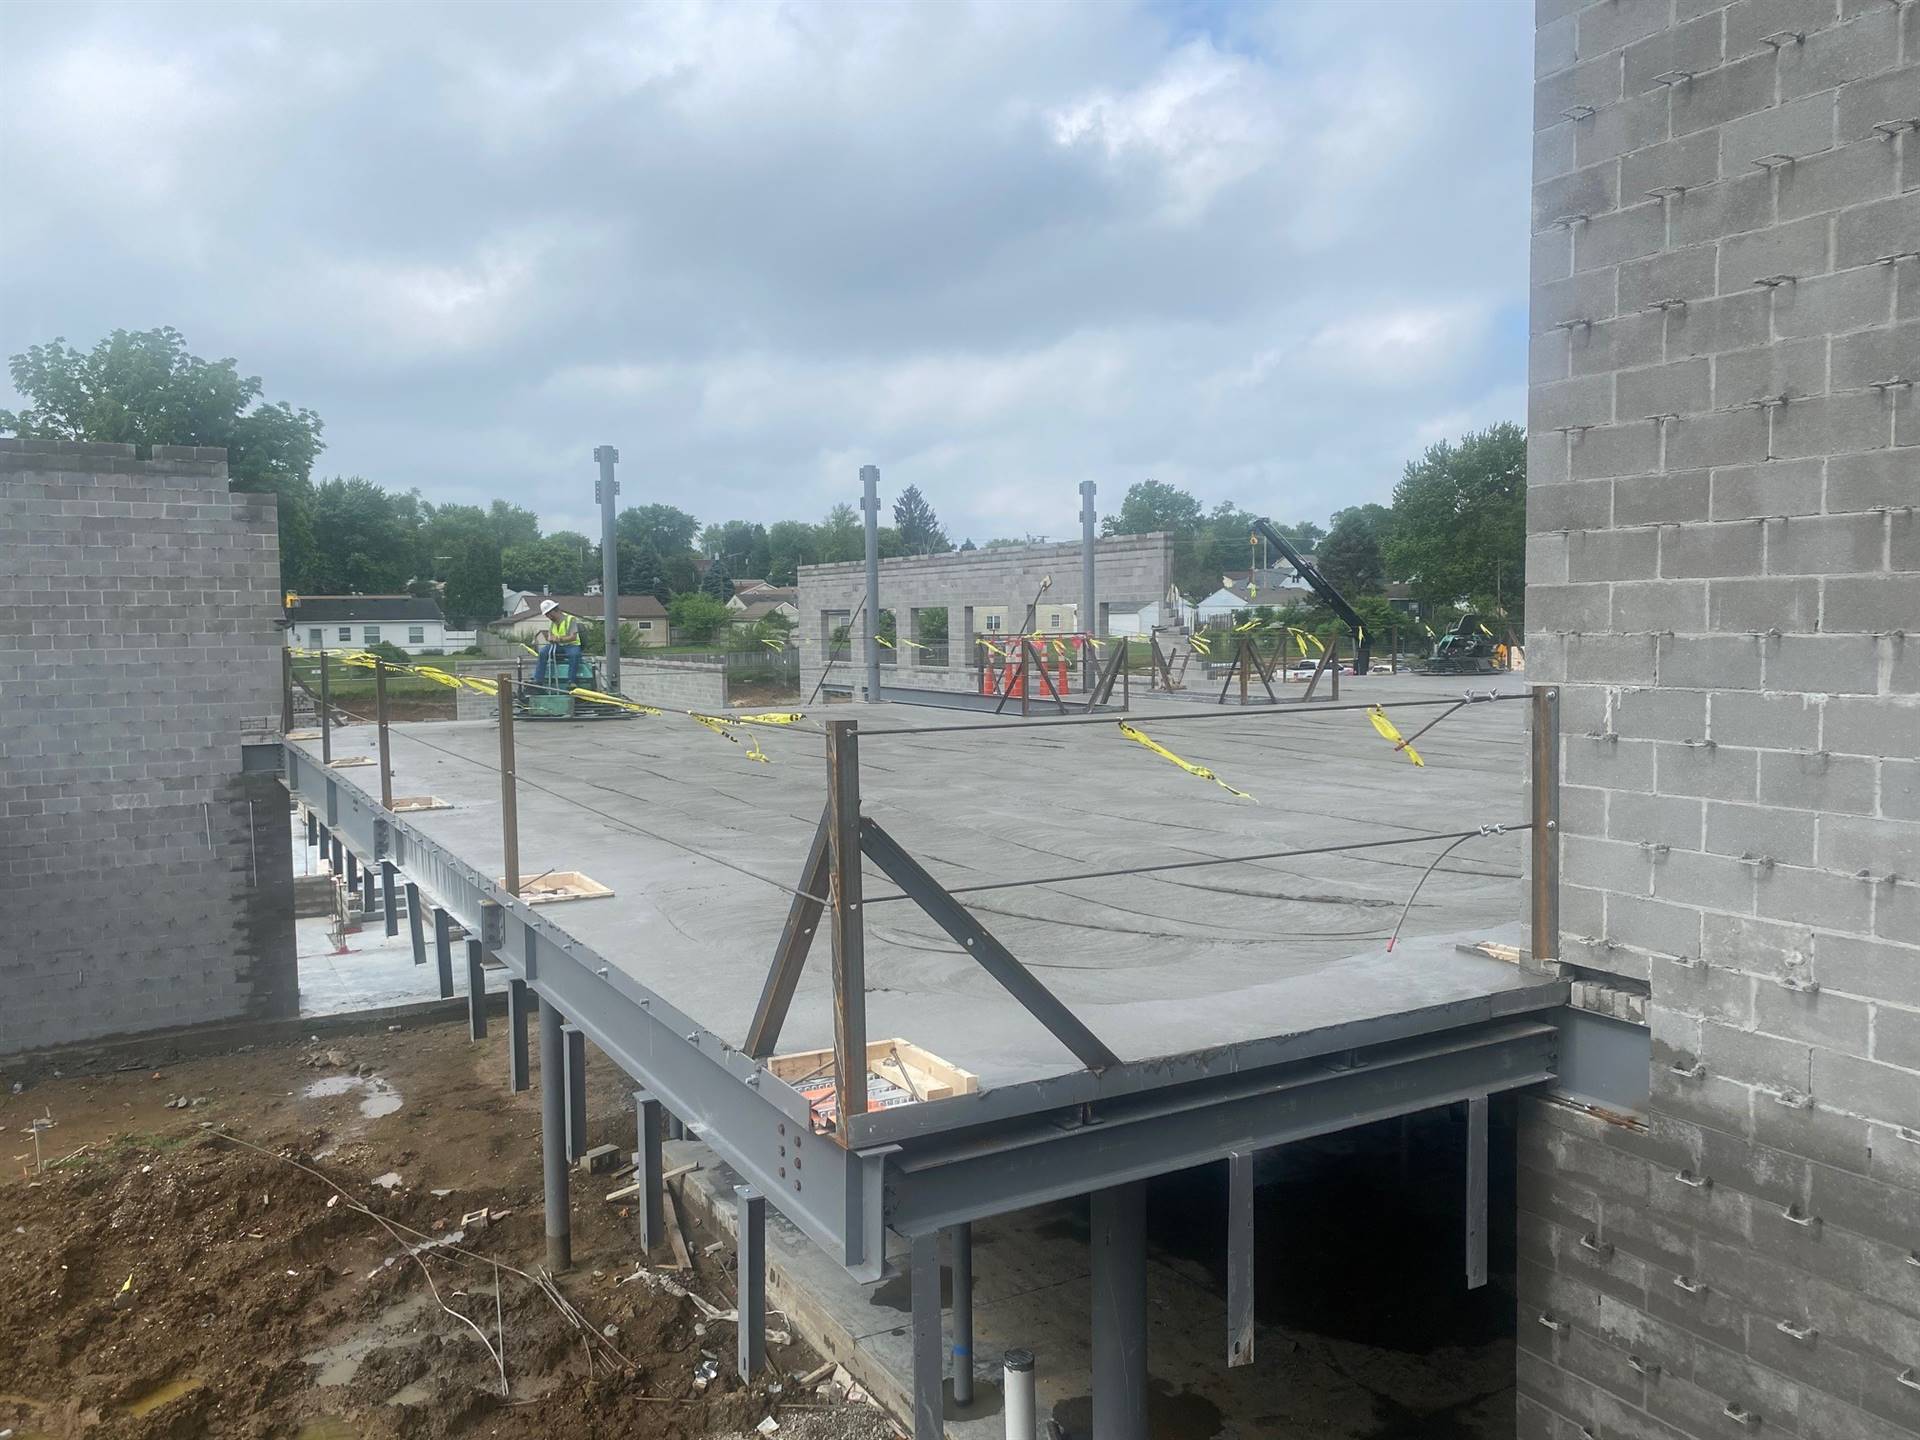 Area C-Fairborn Intermediate construction site-June 10, 2021